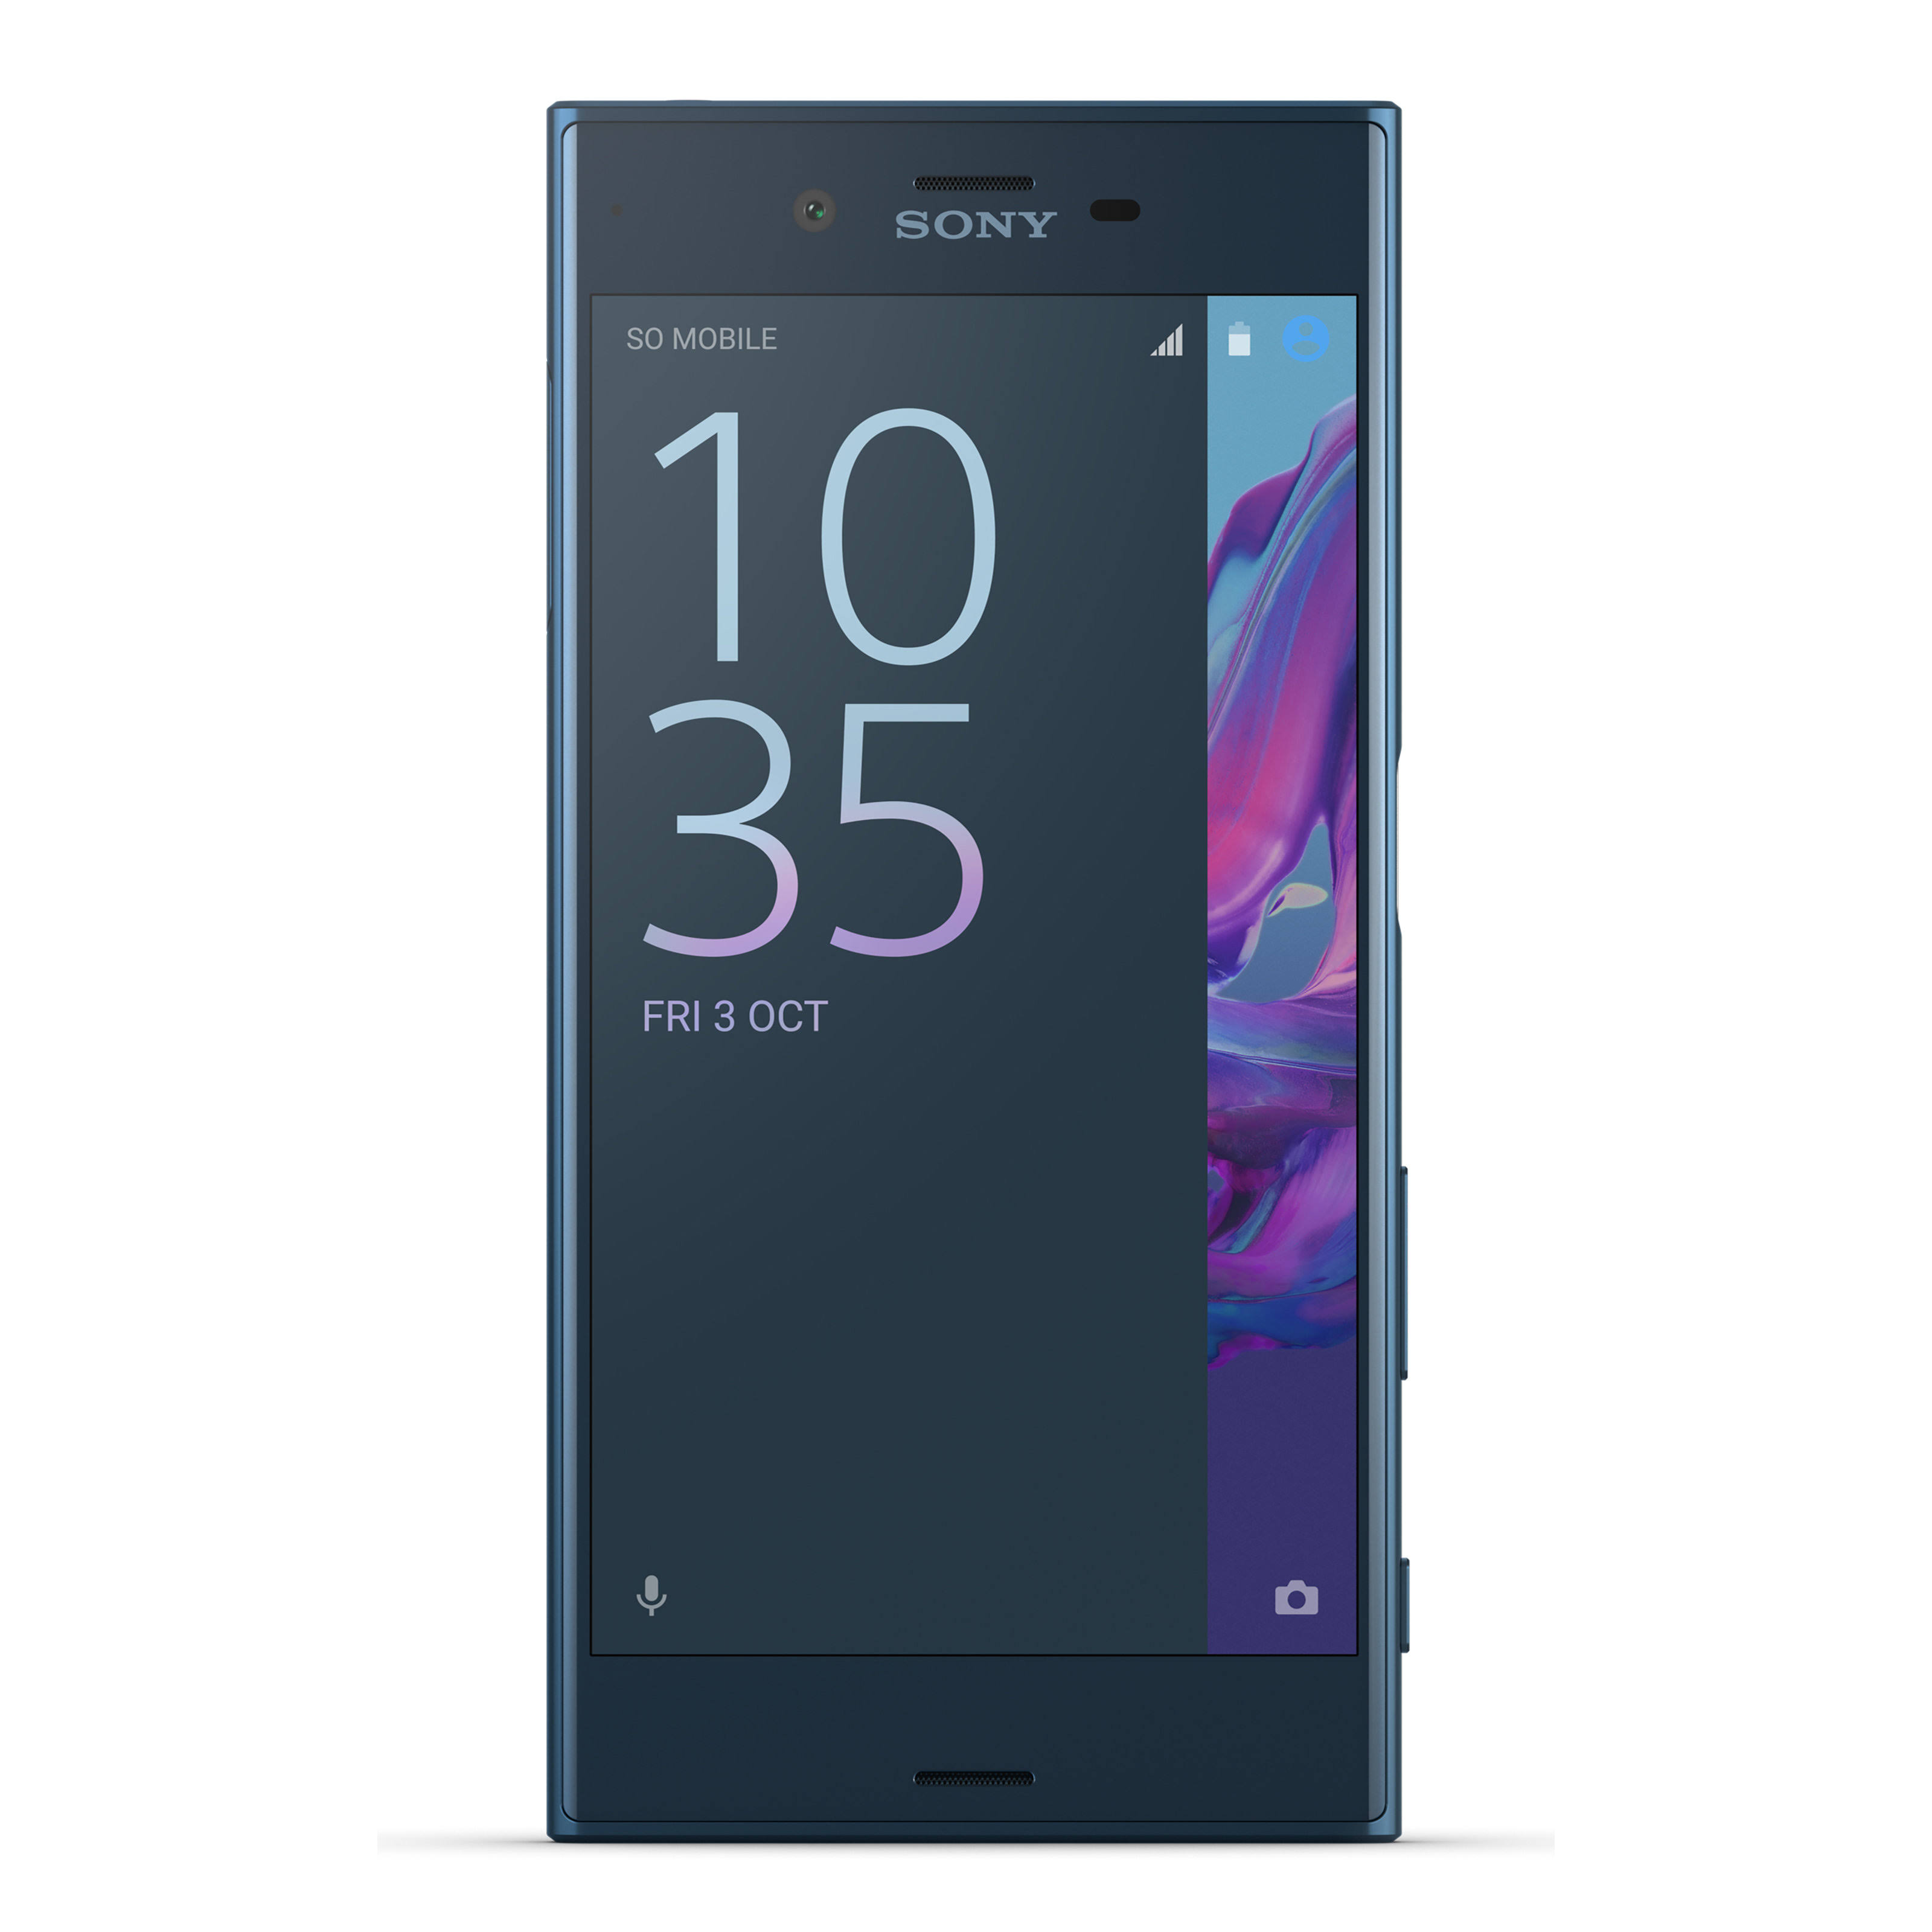 Sony Mobile Communications, (USA) Inc Sony Xperia XZ - Smartphone déverrouillé - 32 Go - Bleu forêt (Garantie américaine)